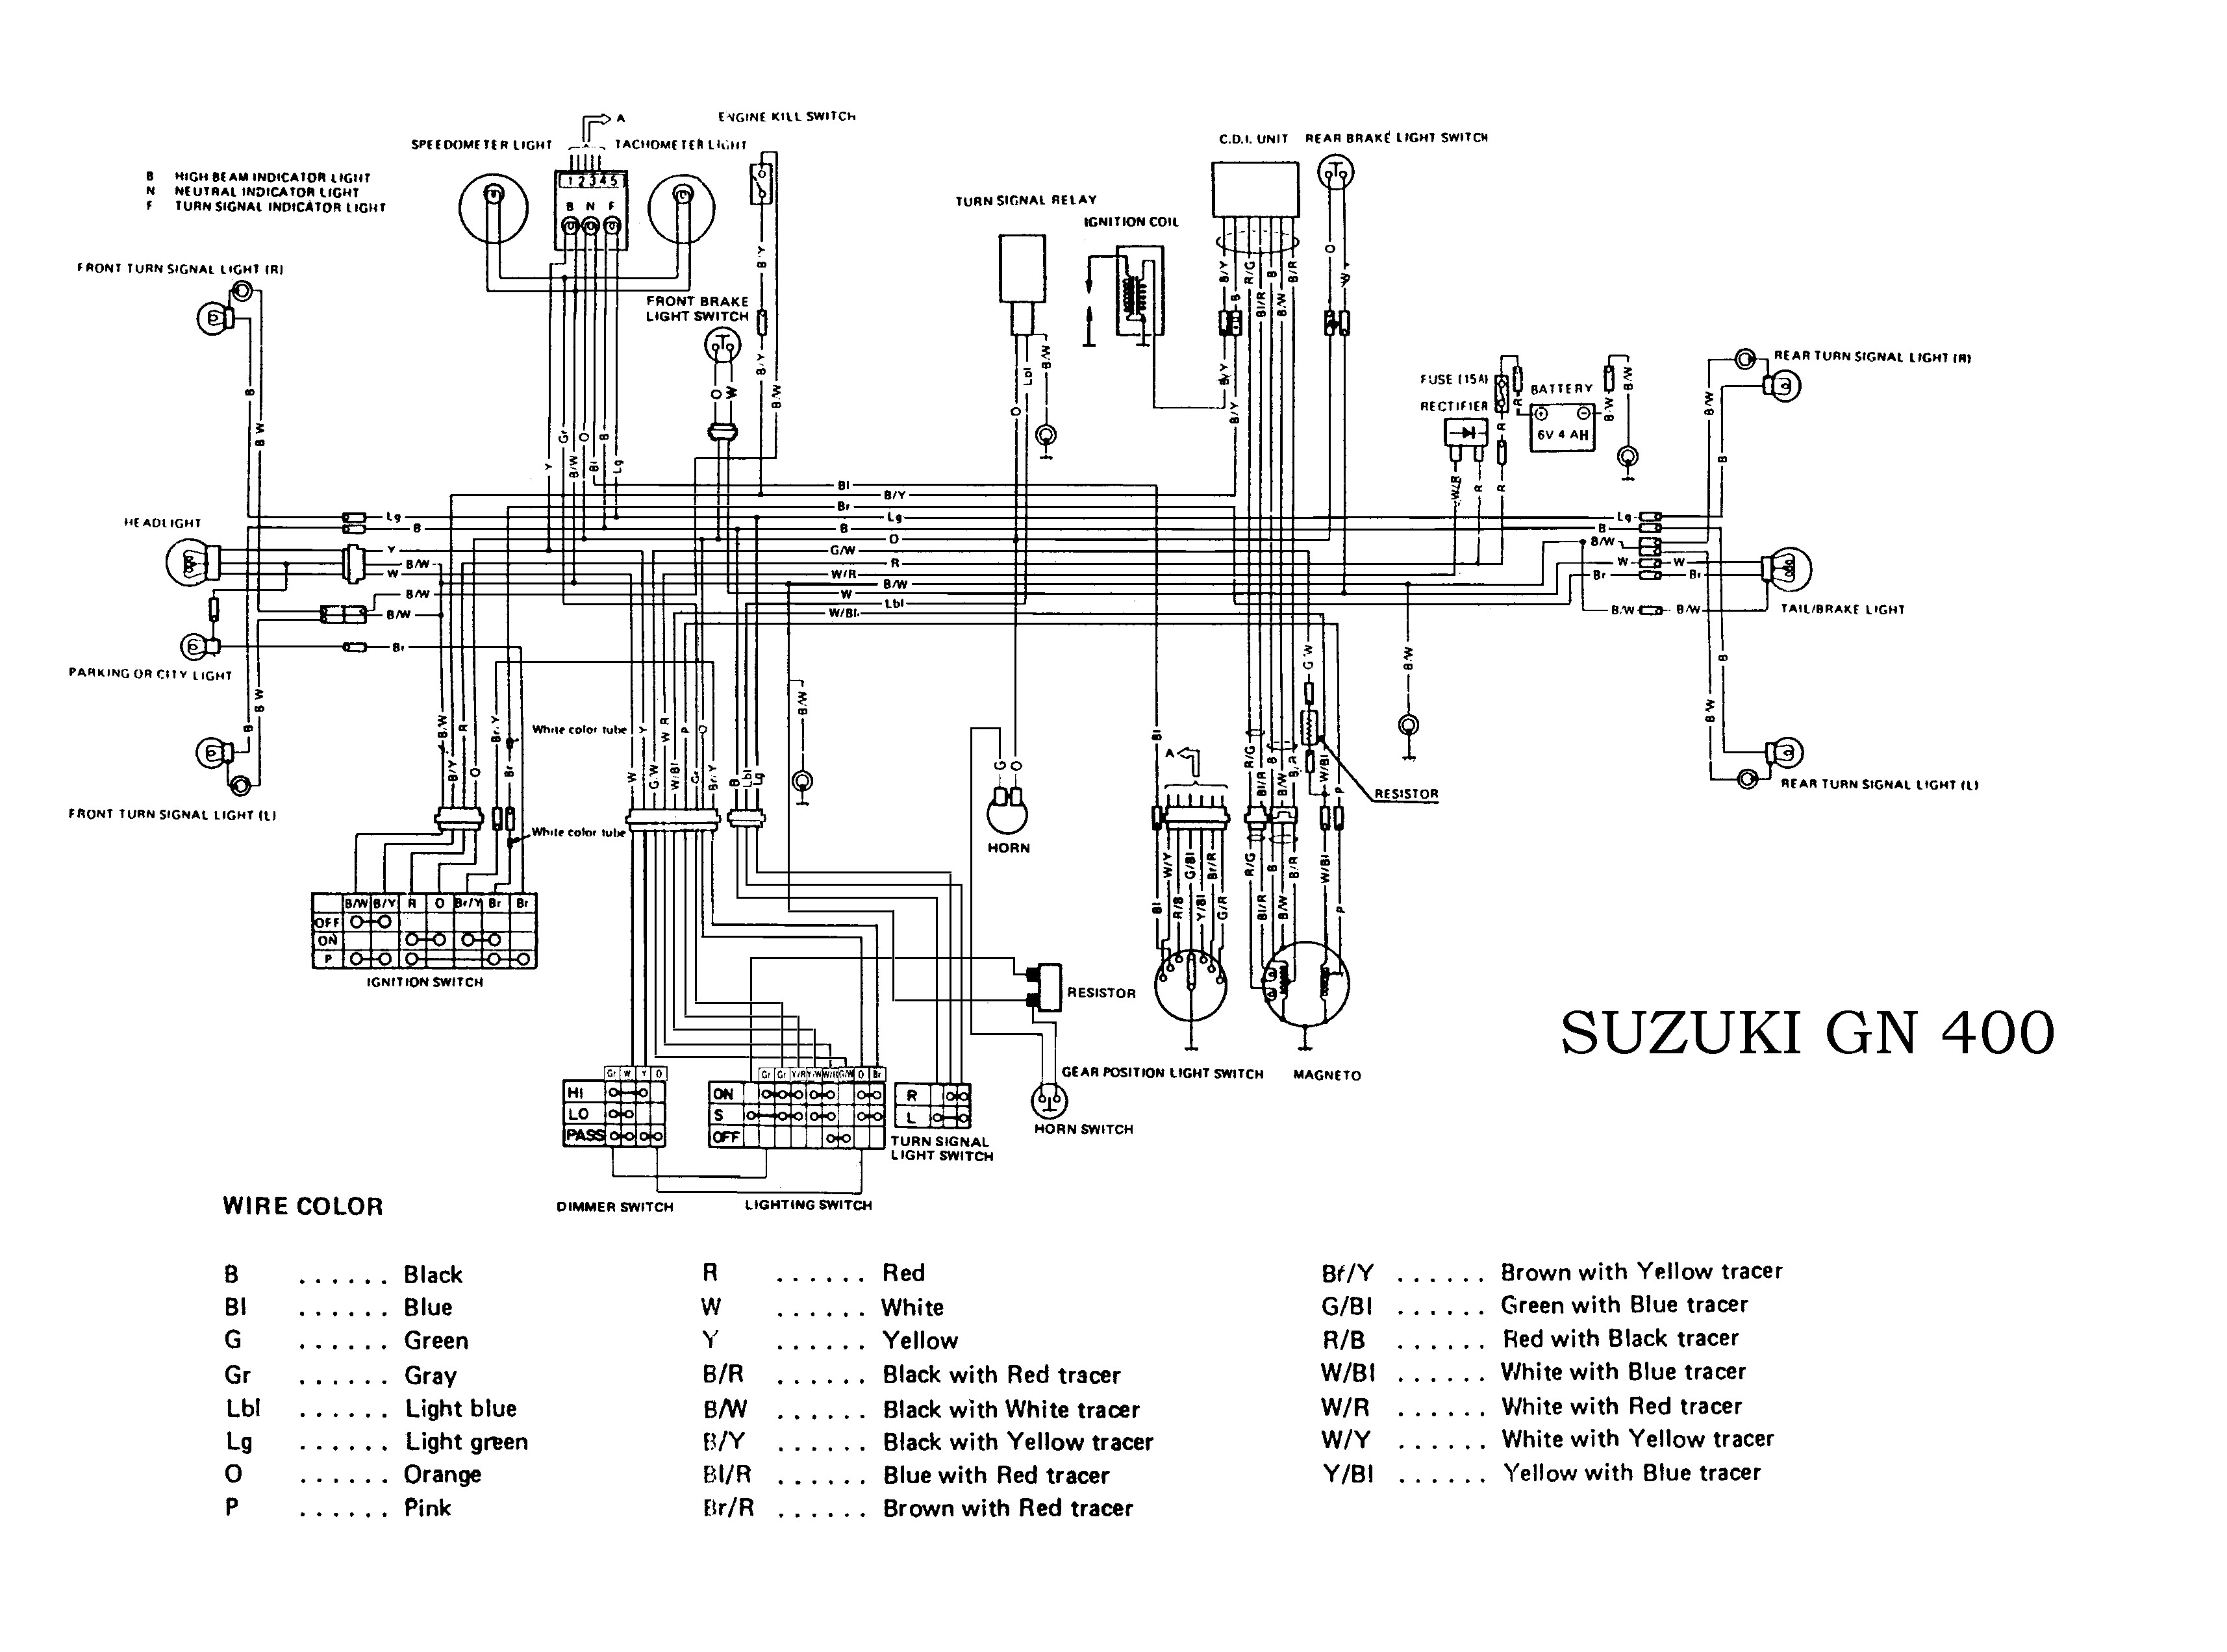 Suzuki Wiring Diagram Motorcycle Kawasaki Er 6 Wiring Diagram Kawasaki Wiring Diagrams Instructions Of Suzuki Wiring Diagram Motorcycle